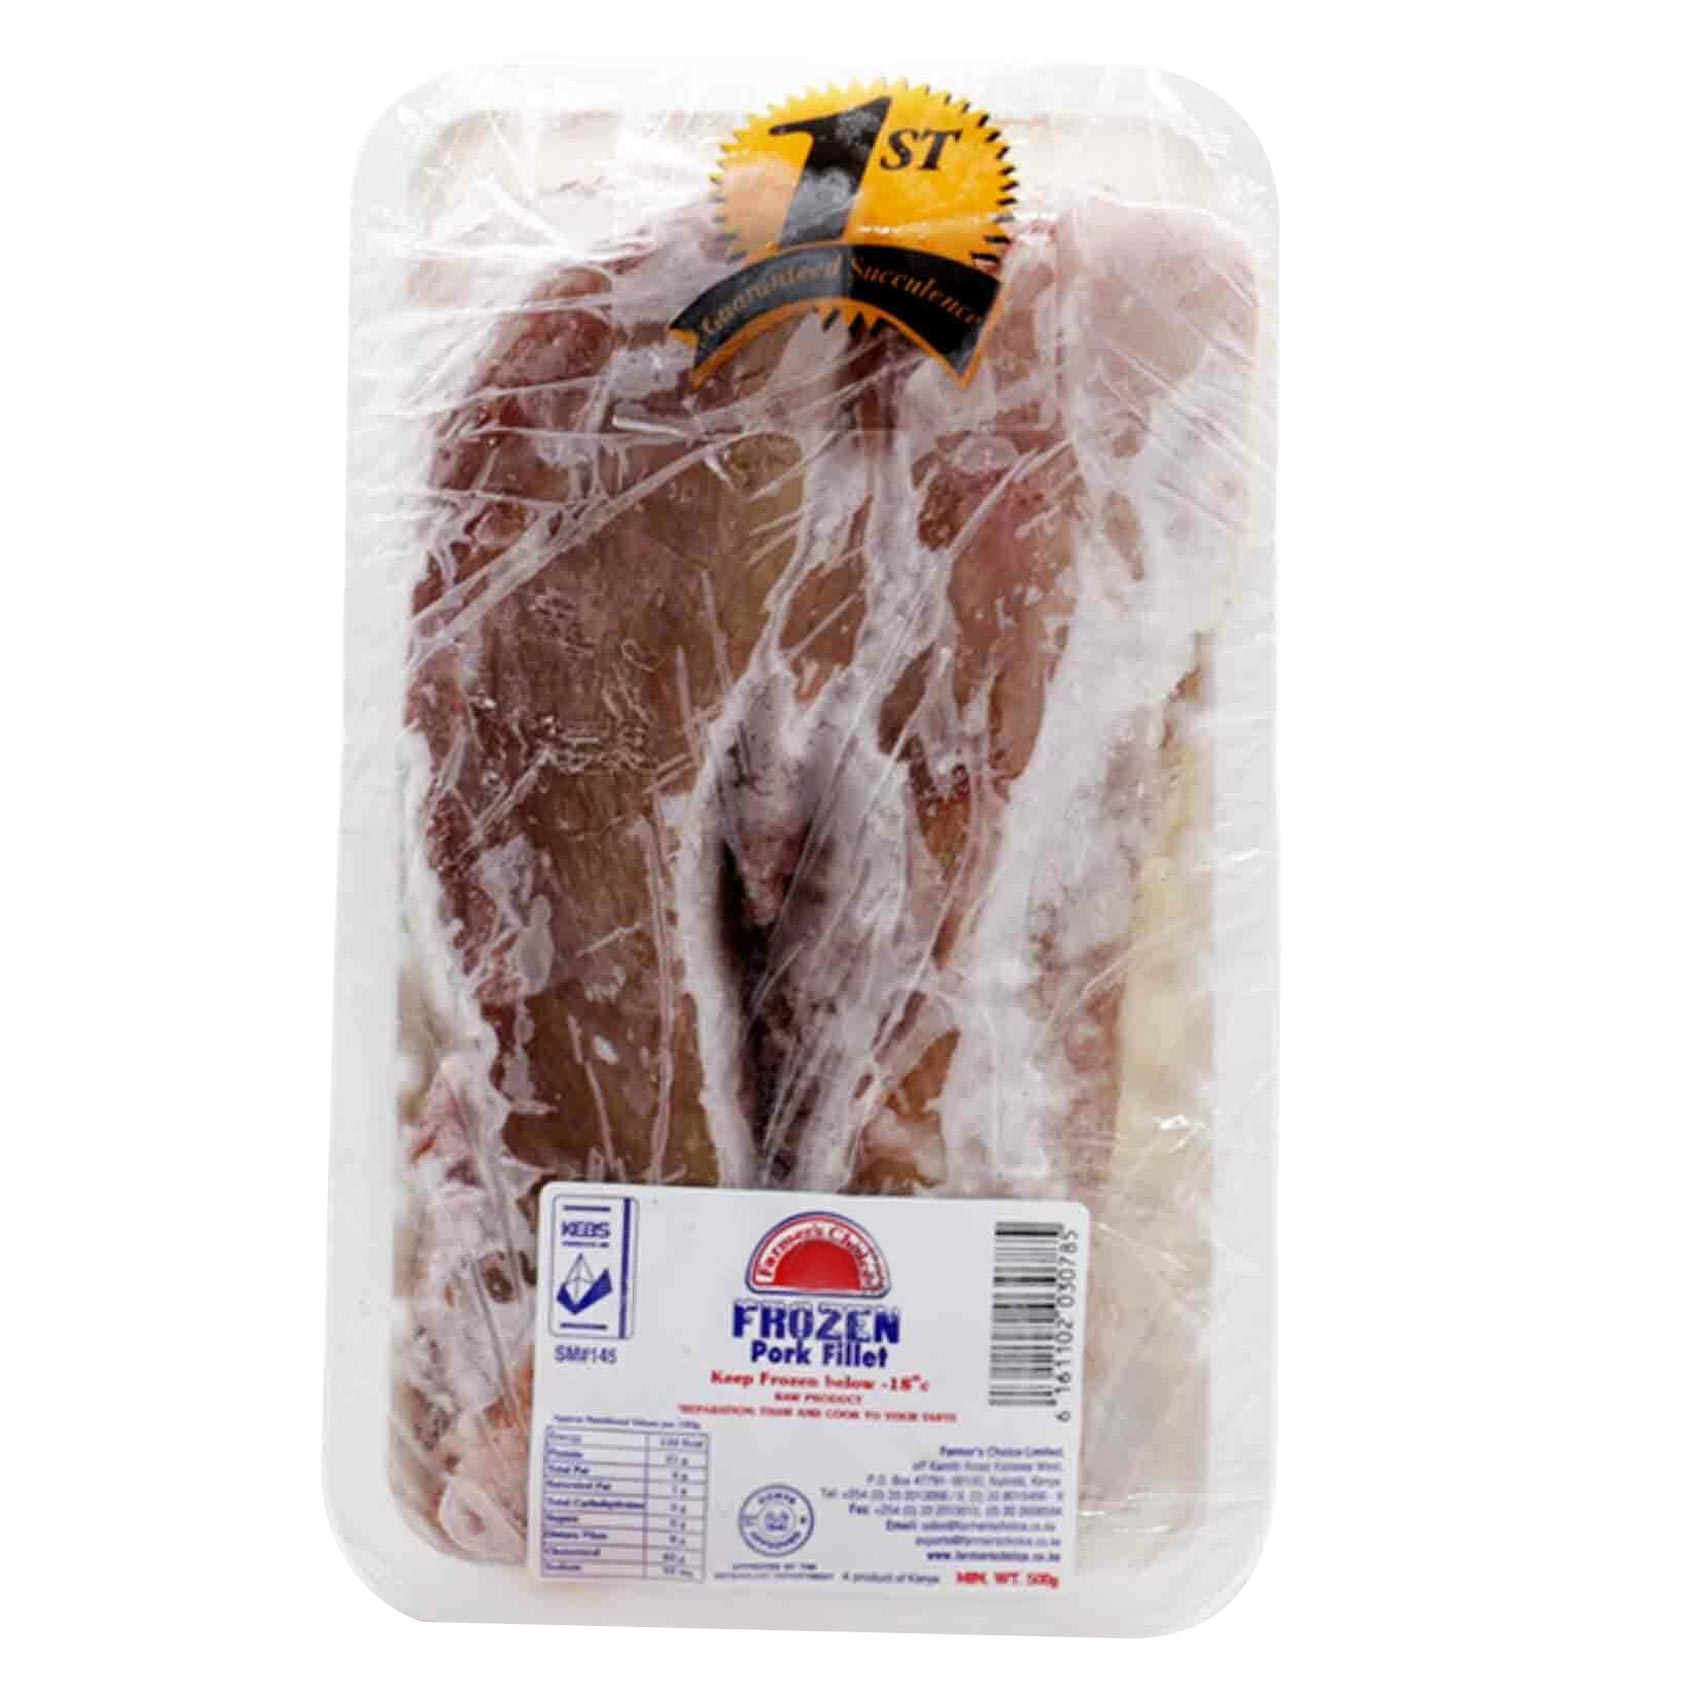 Farmers Choice Frozen Pork Fillet 500g